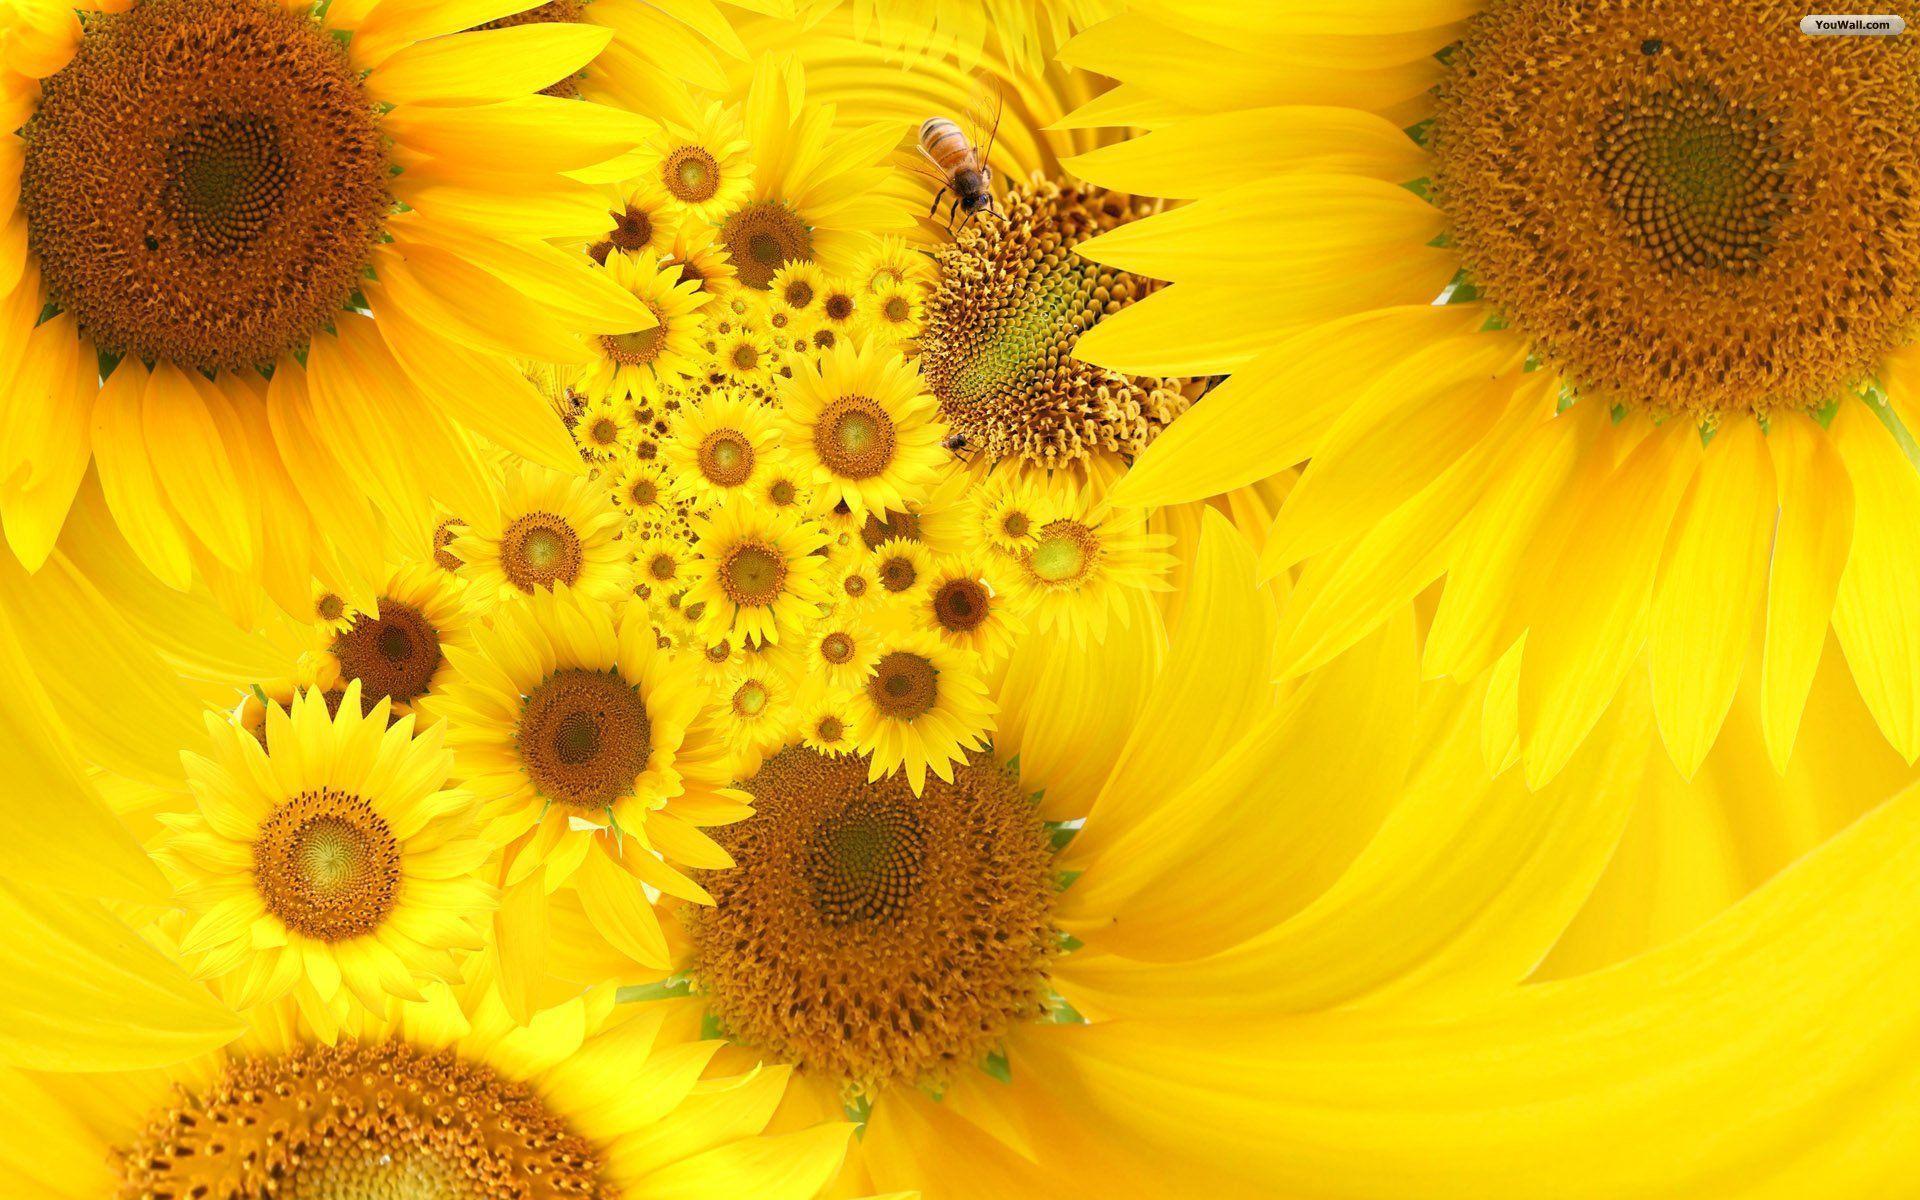 Hướng dương (Sunflowers): \